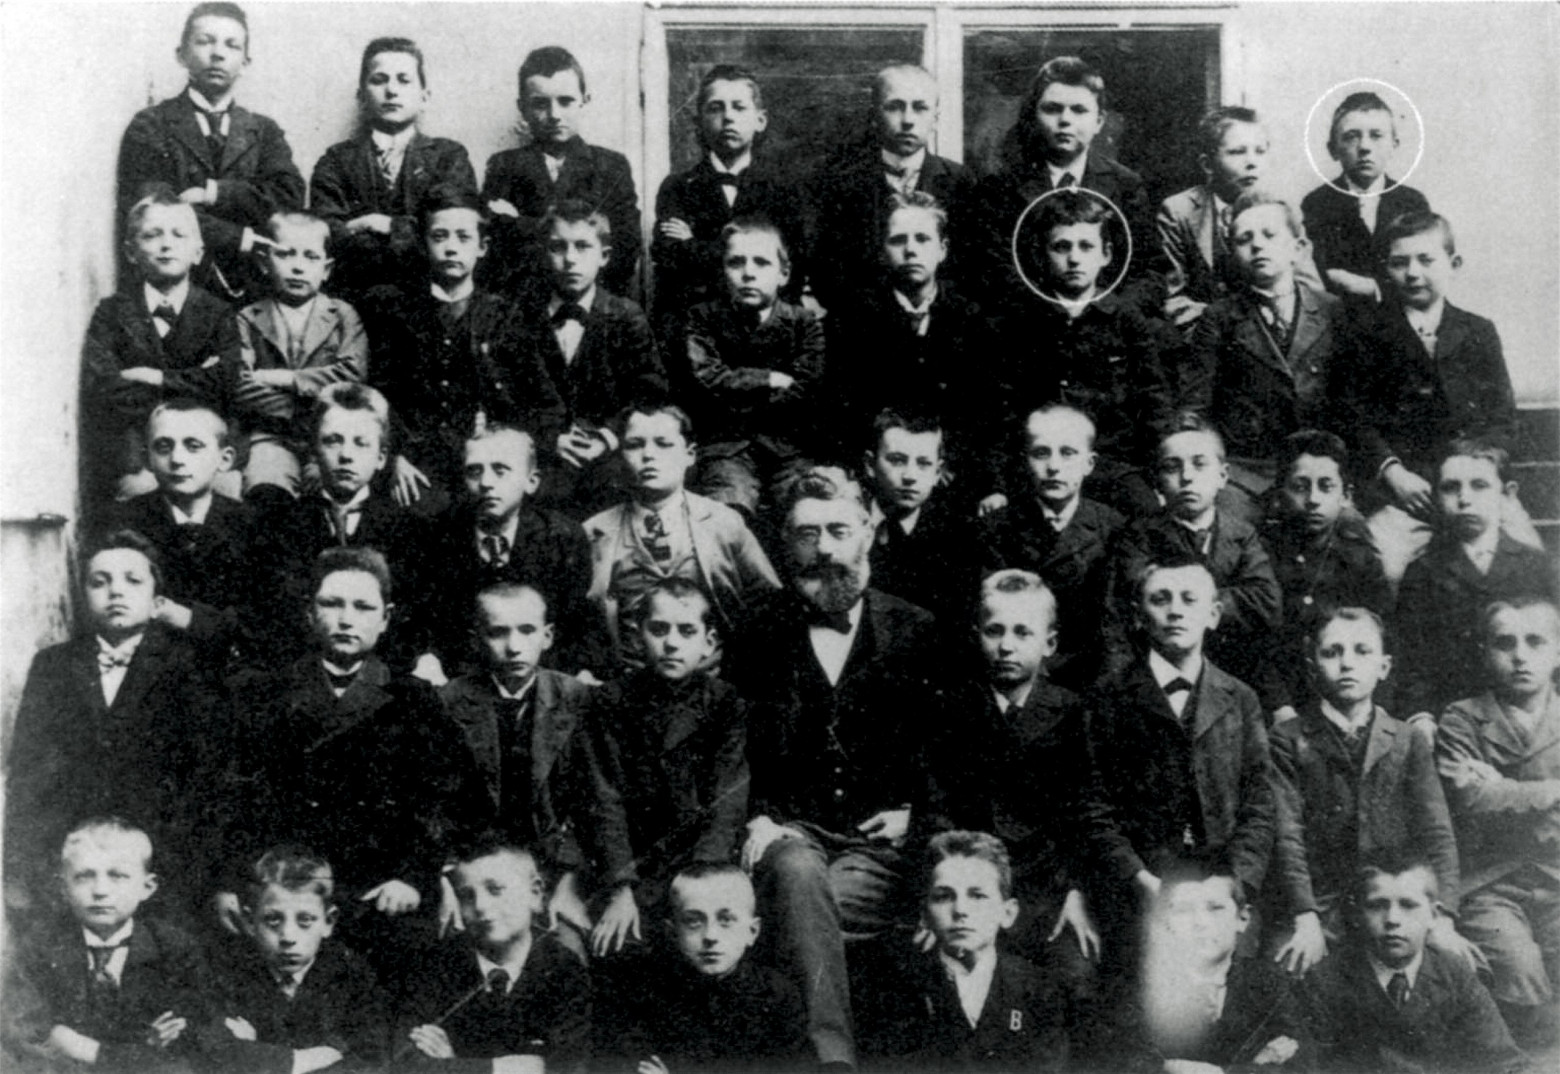 Дружный класс австрийском реальном училище в Линце в 1901 году. Впоследствии один из учеников войдет в историю как великий философ, а другой как великий злодей